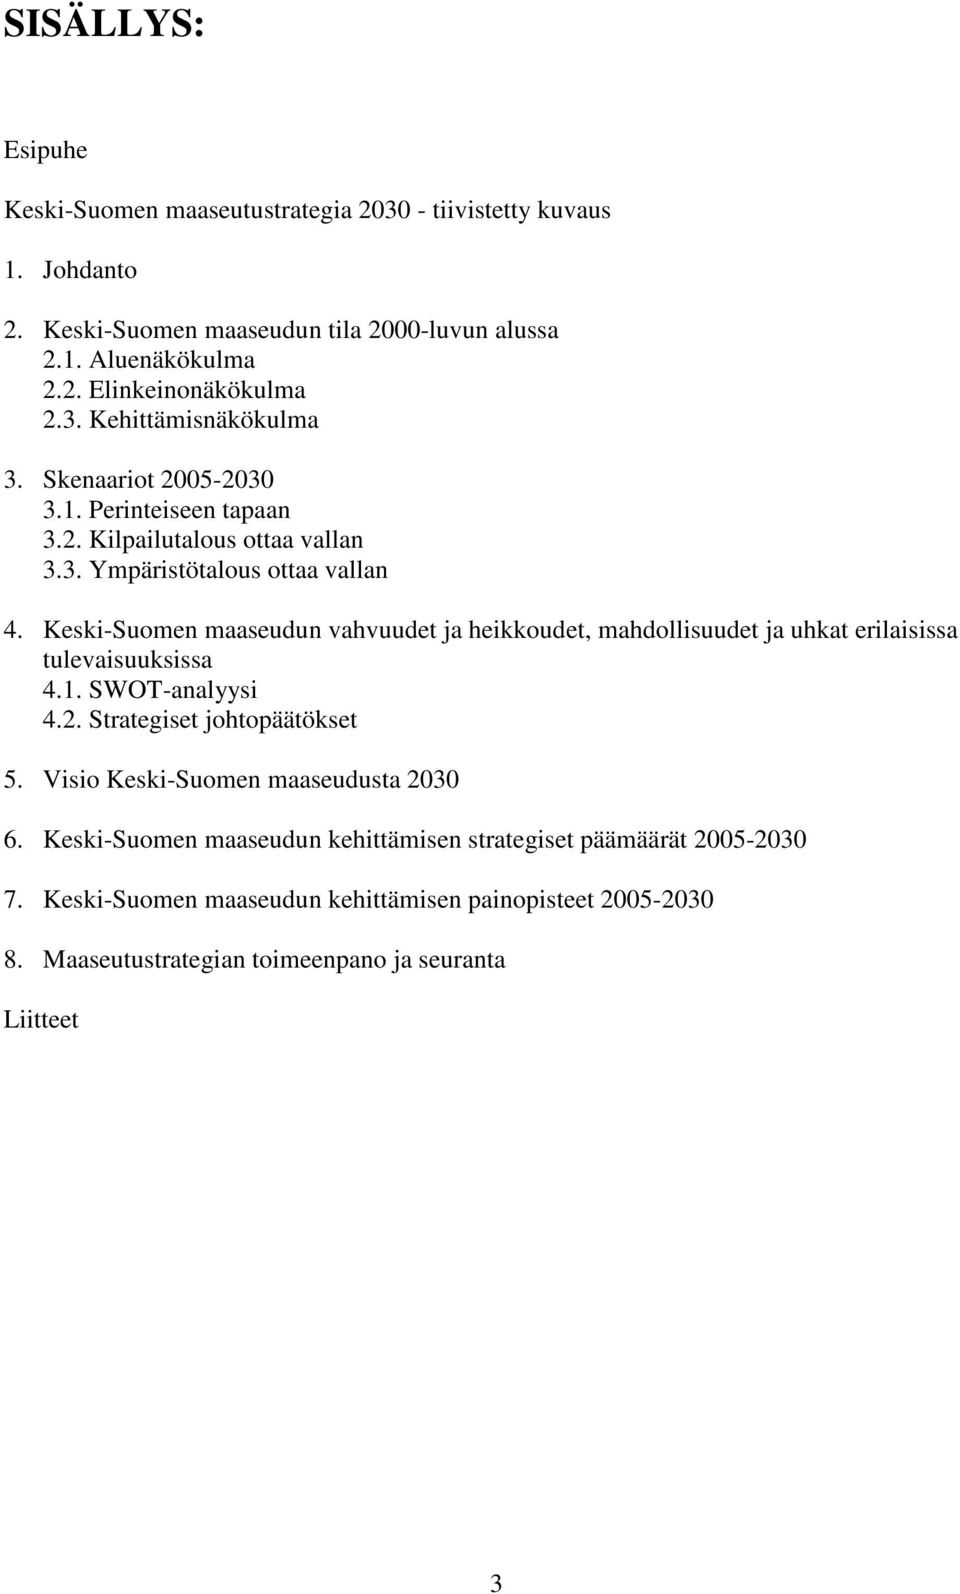 Keski-Suomen maaseudun vahvuudet ja heikkoudet, mahdollisuudet ja uhkat erilaisissa tulevaisuuksissa 4.1. SWOT-analyysi 4.2. Strategiset johtopäätökset 5.